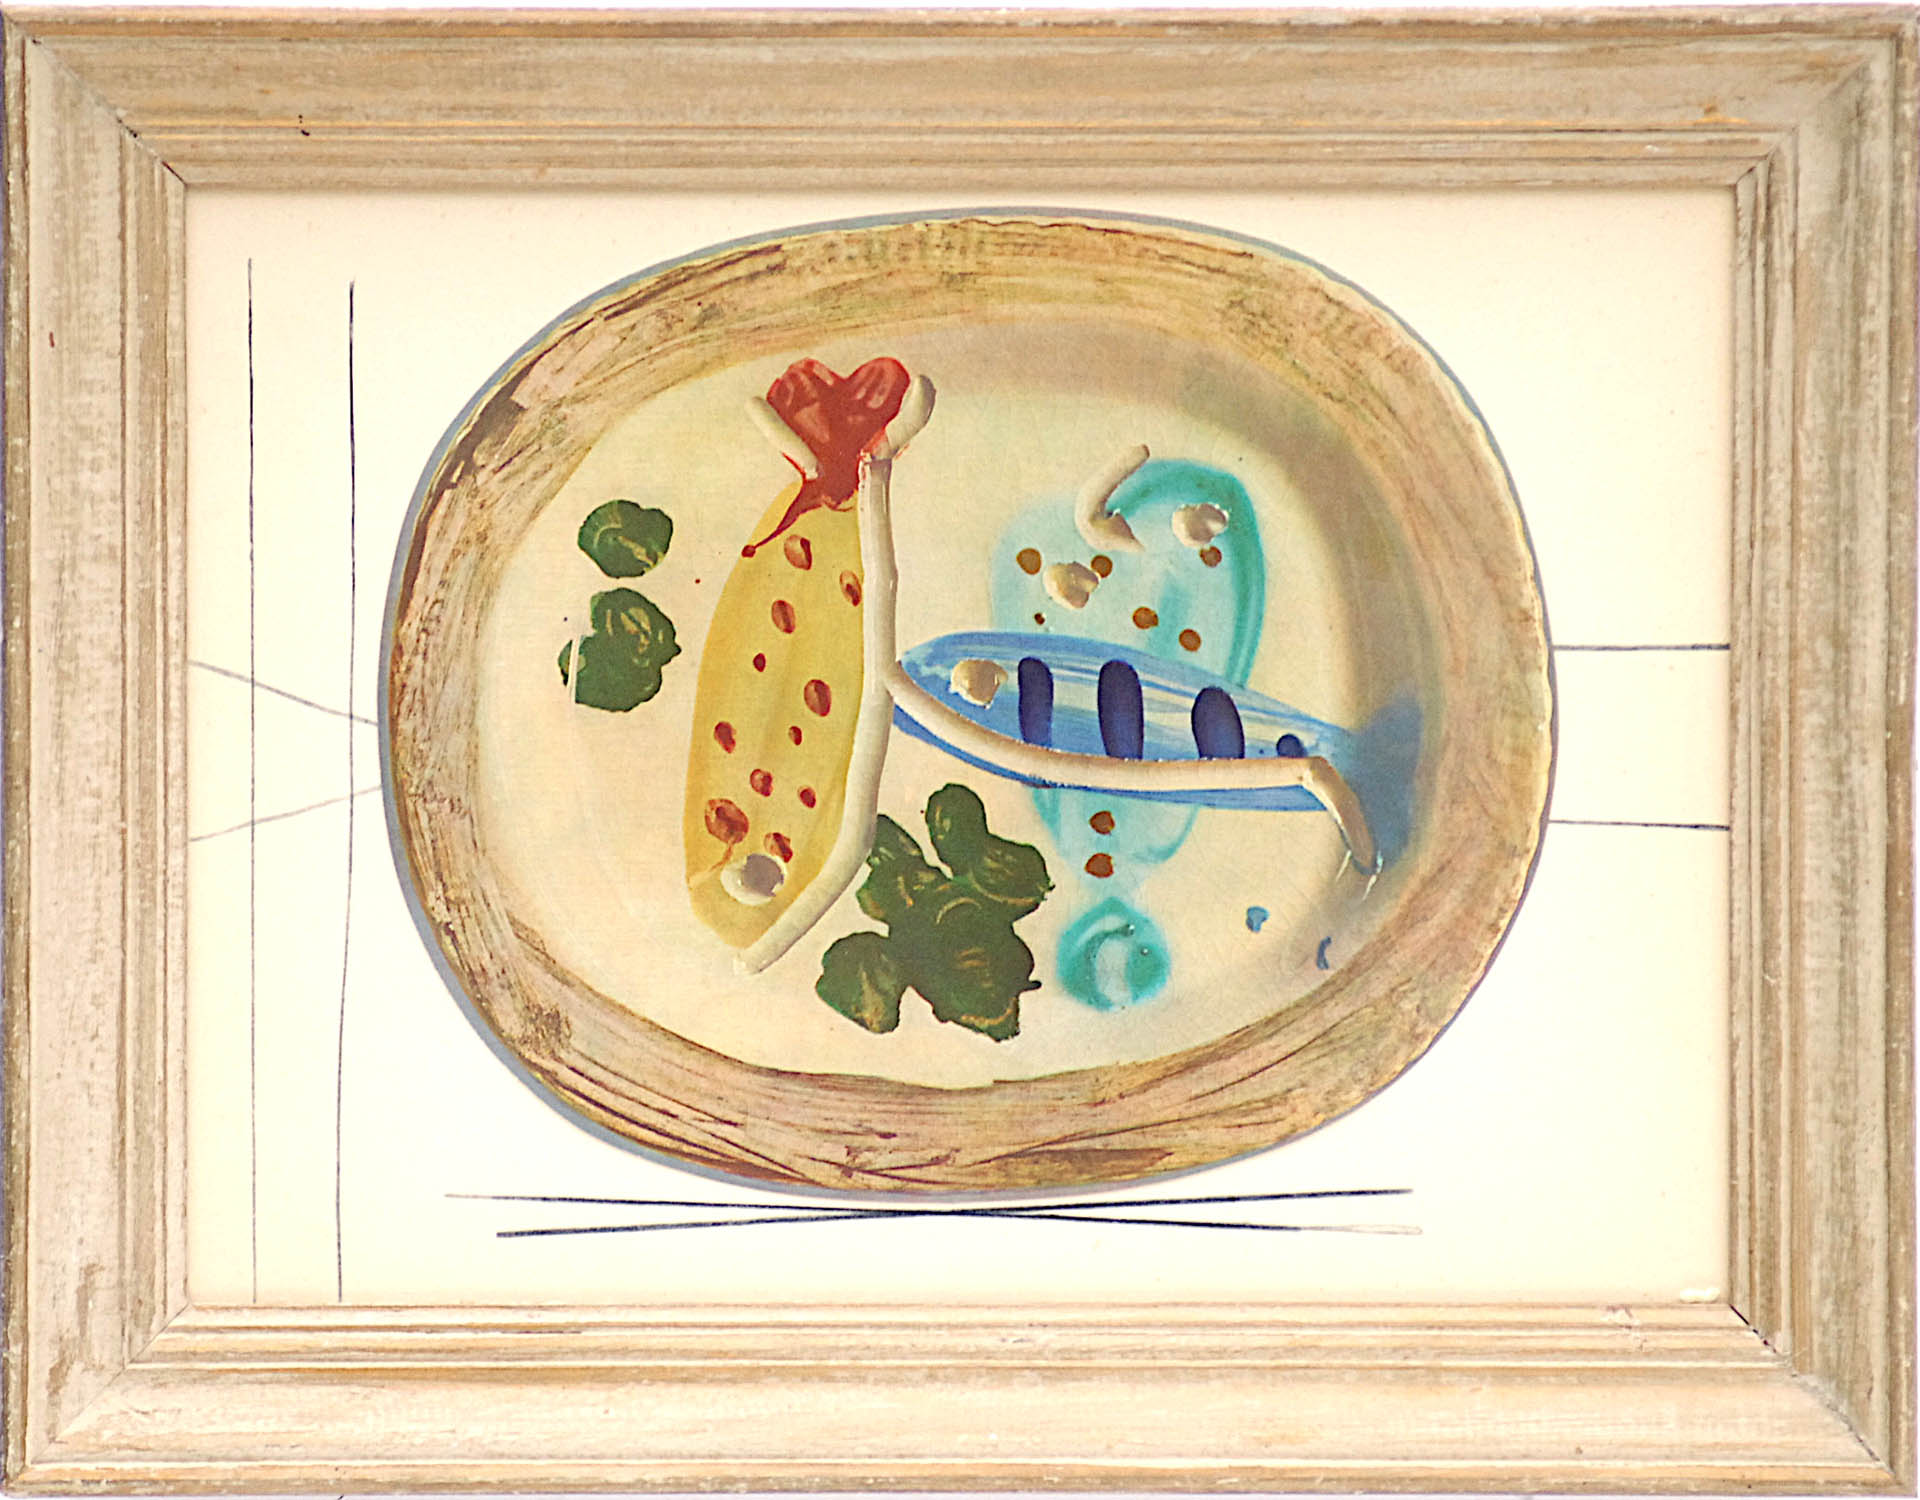 PABLO PICASSO 'Fish', quadrichrome ceramic plate, 1948 suite ceramiques, 28cm x 38cm.